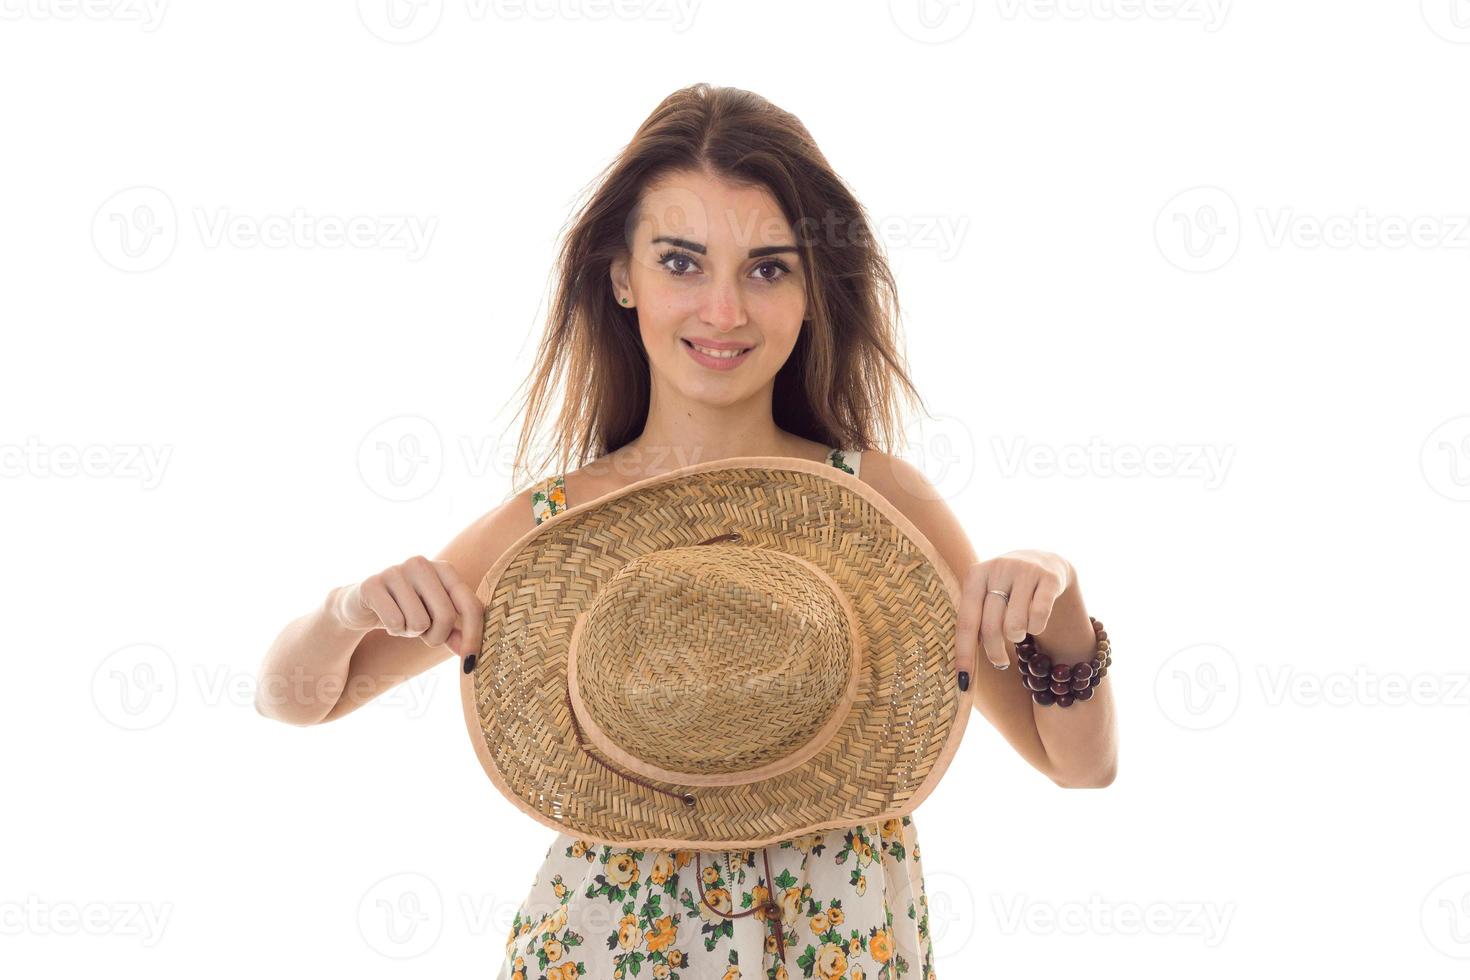 jong mooi brunette meisje in sarafan met bloemen patroon en rietje hoed met breed rand glimlachen Aan camera geïsoleerd Aan wit achtergrond foto